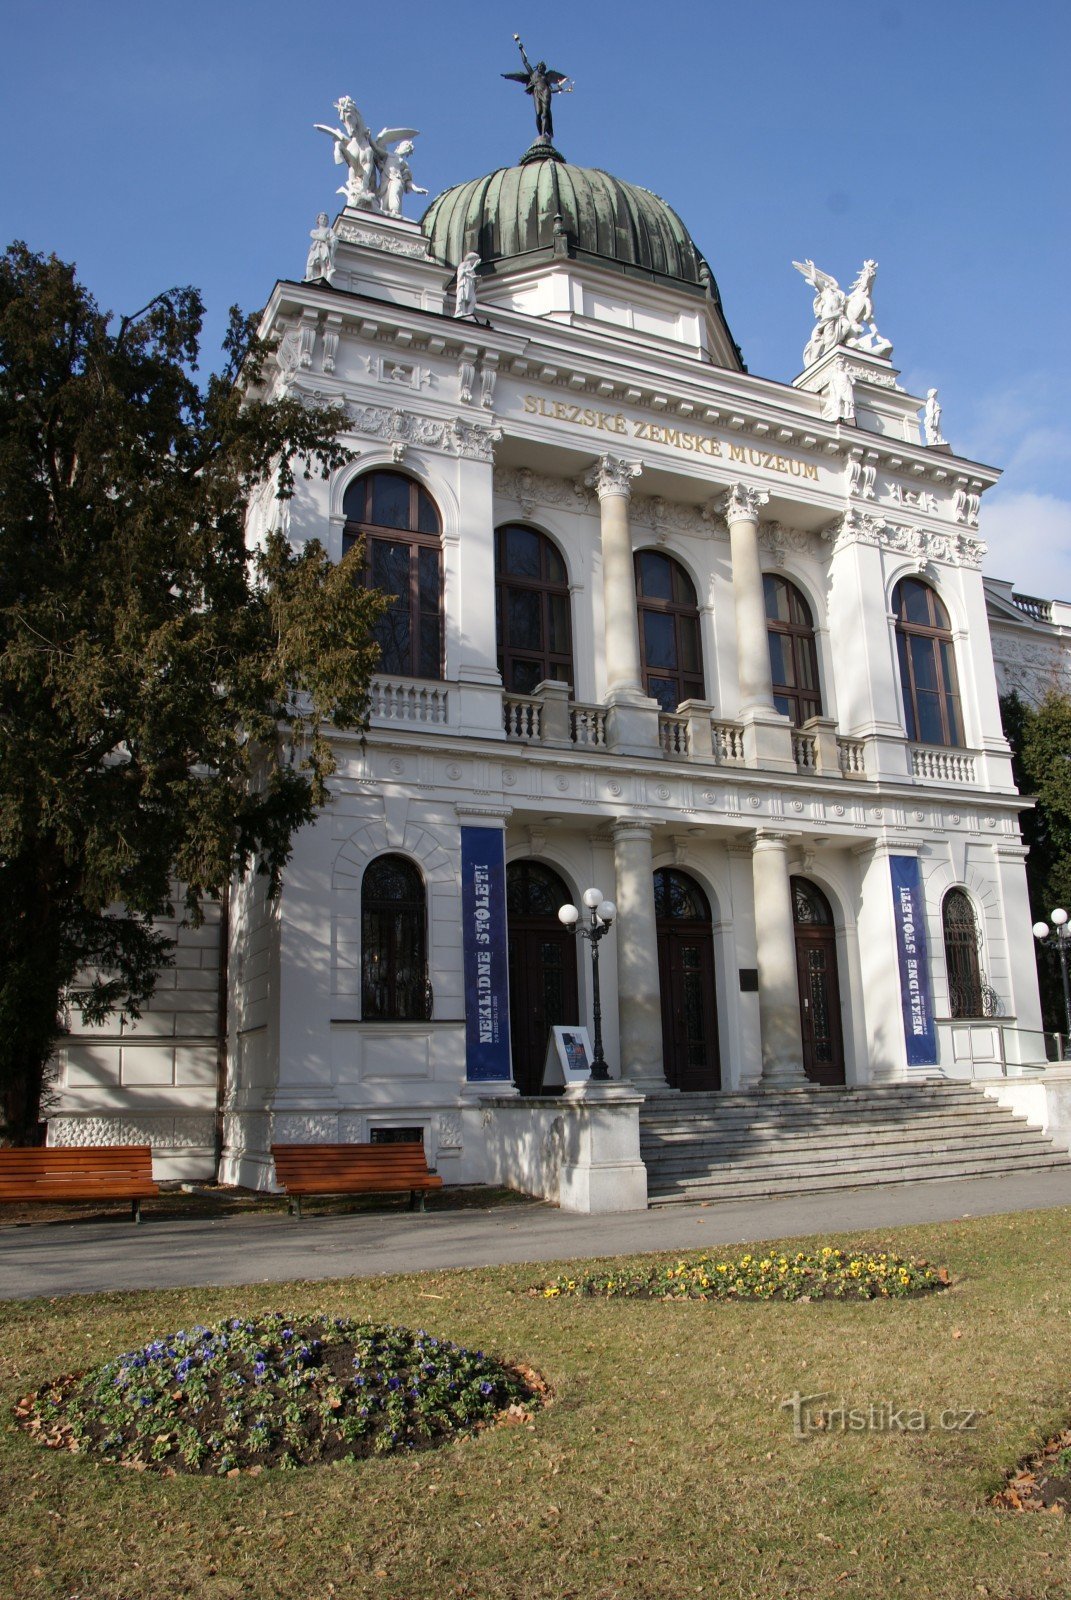 Śląskie Muzeum Regionalne